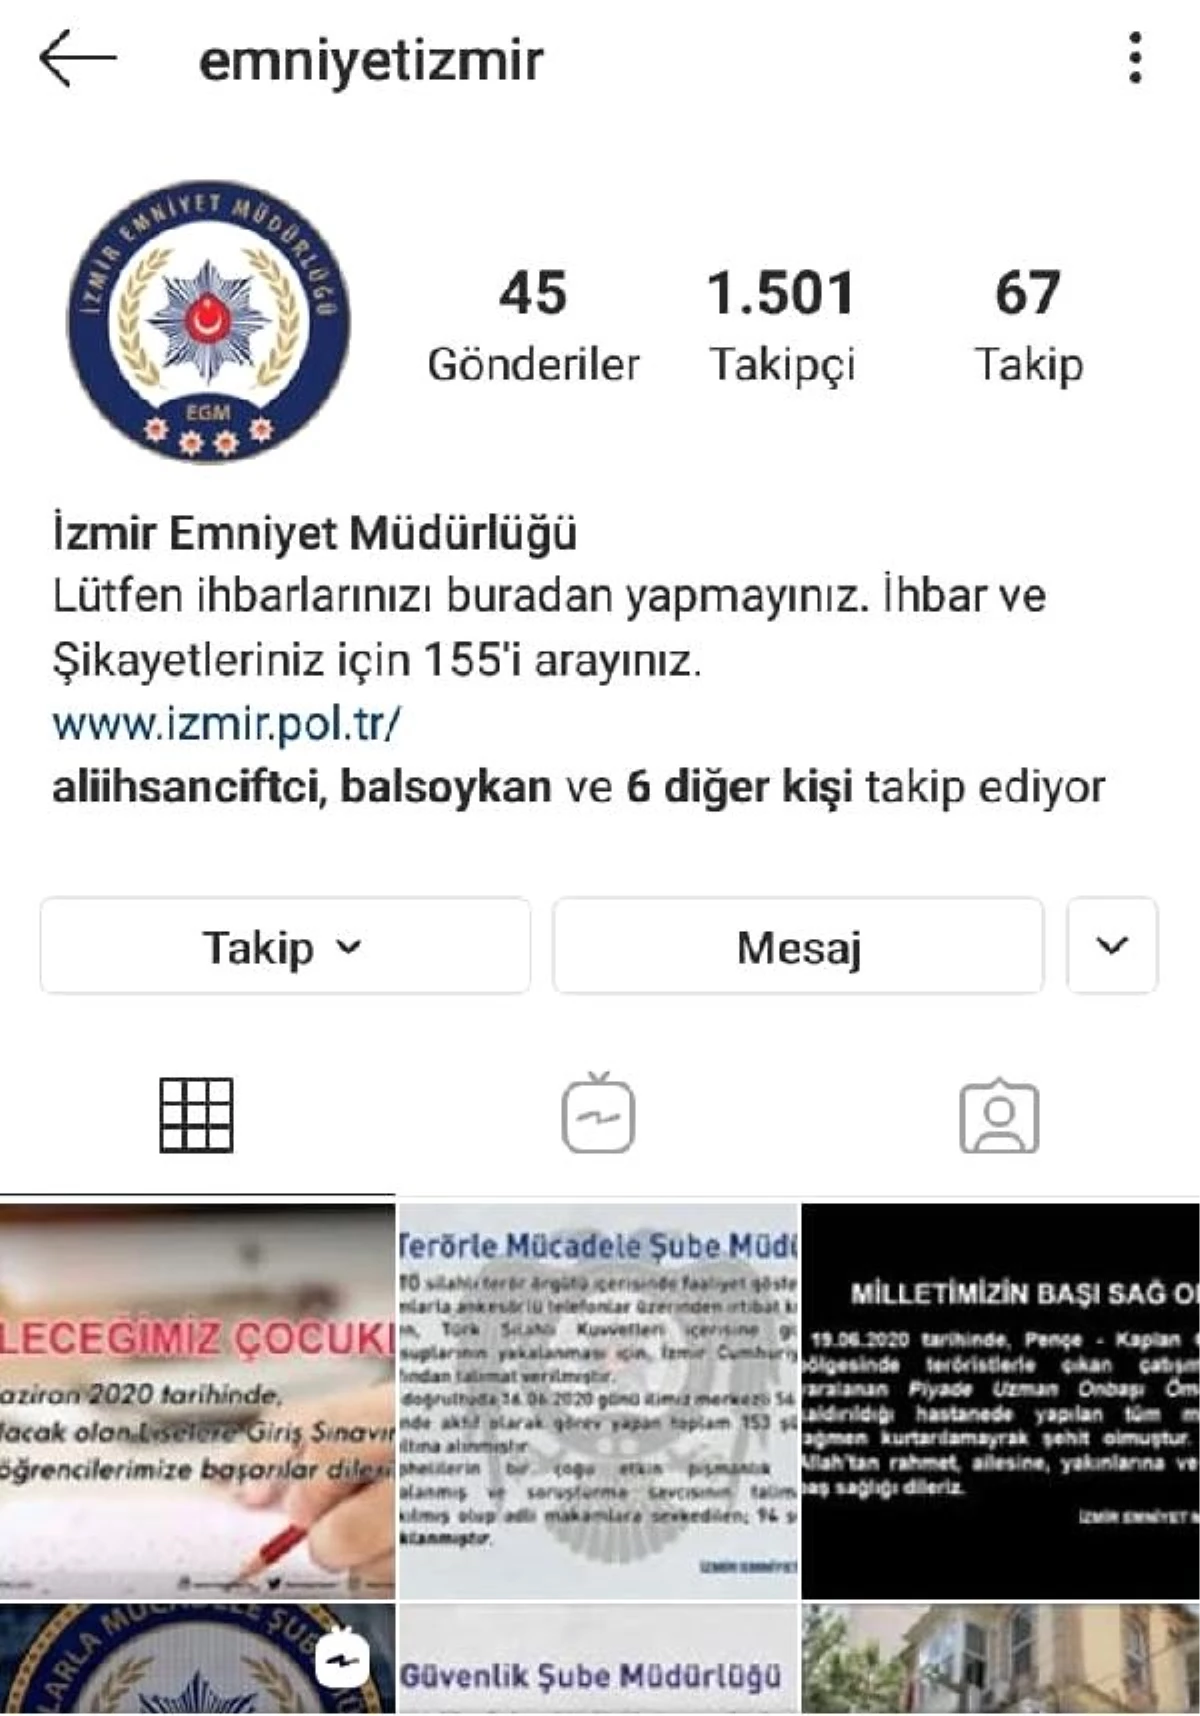 İzmir Emniyeti, artık sosyal medyada